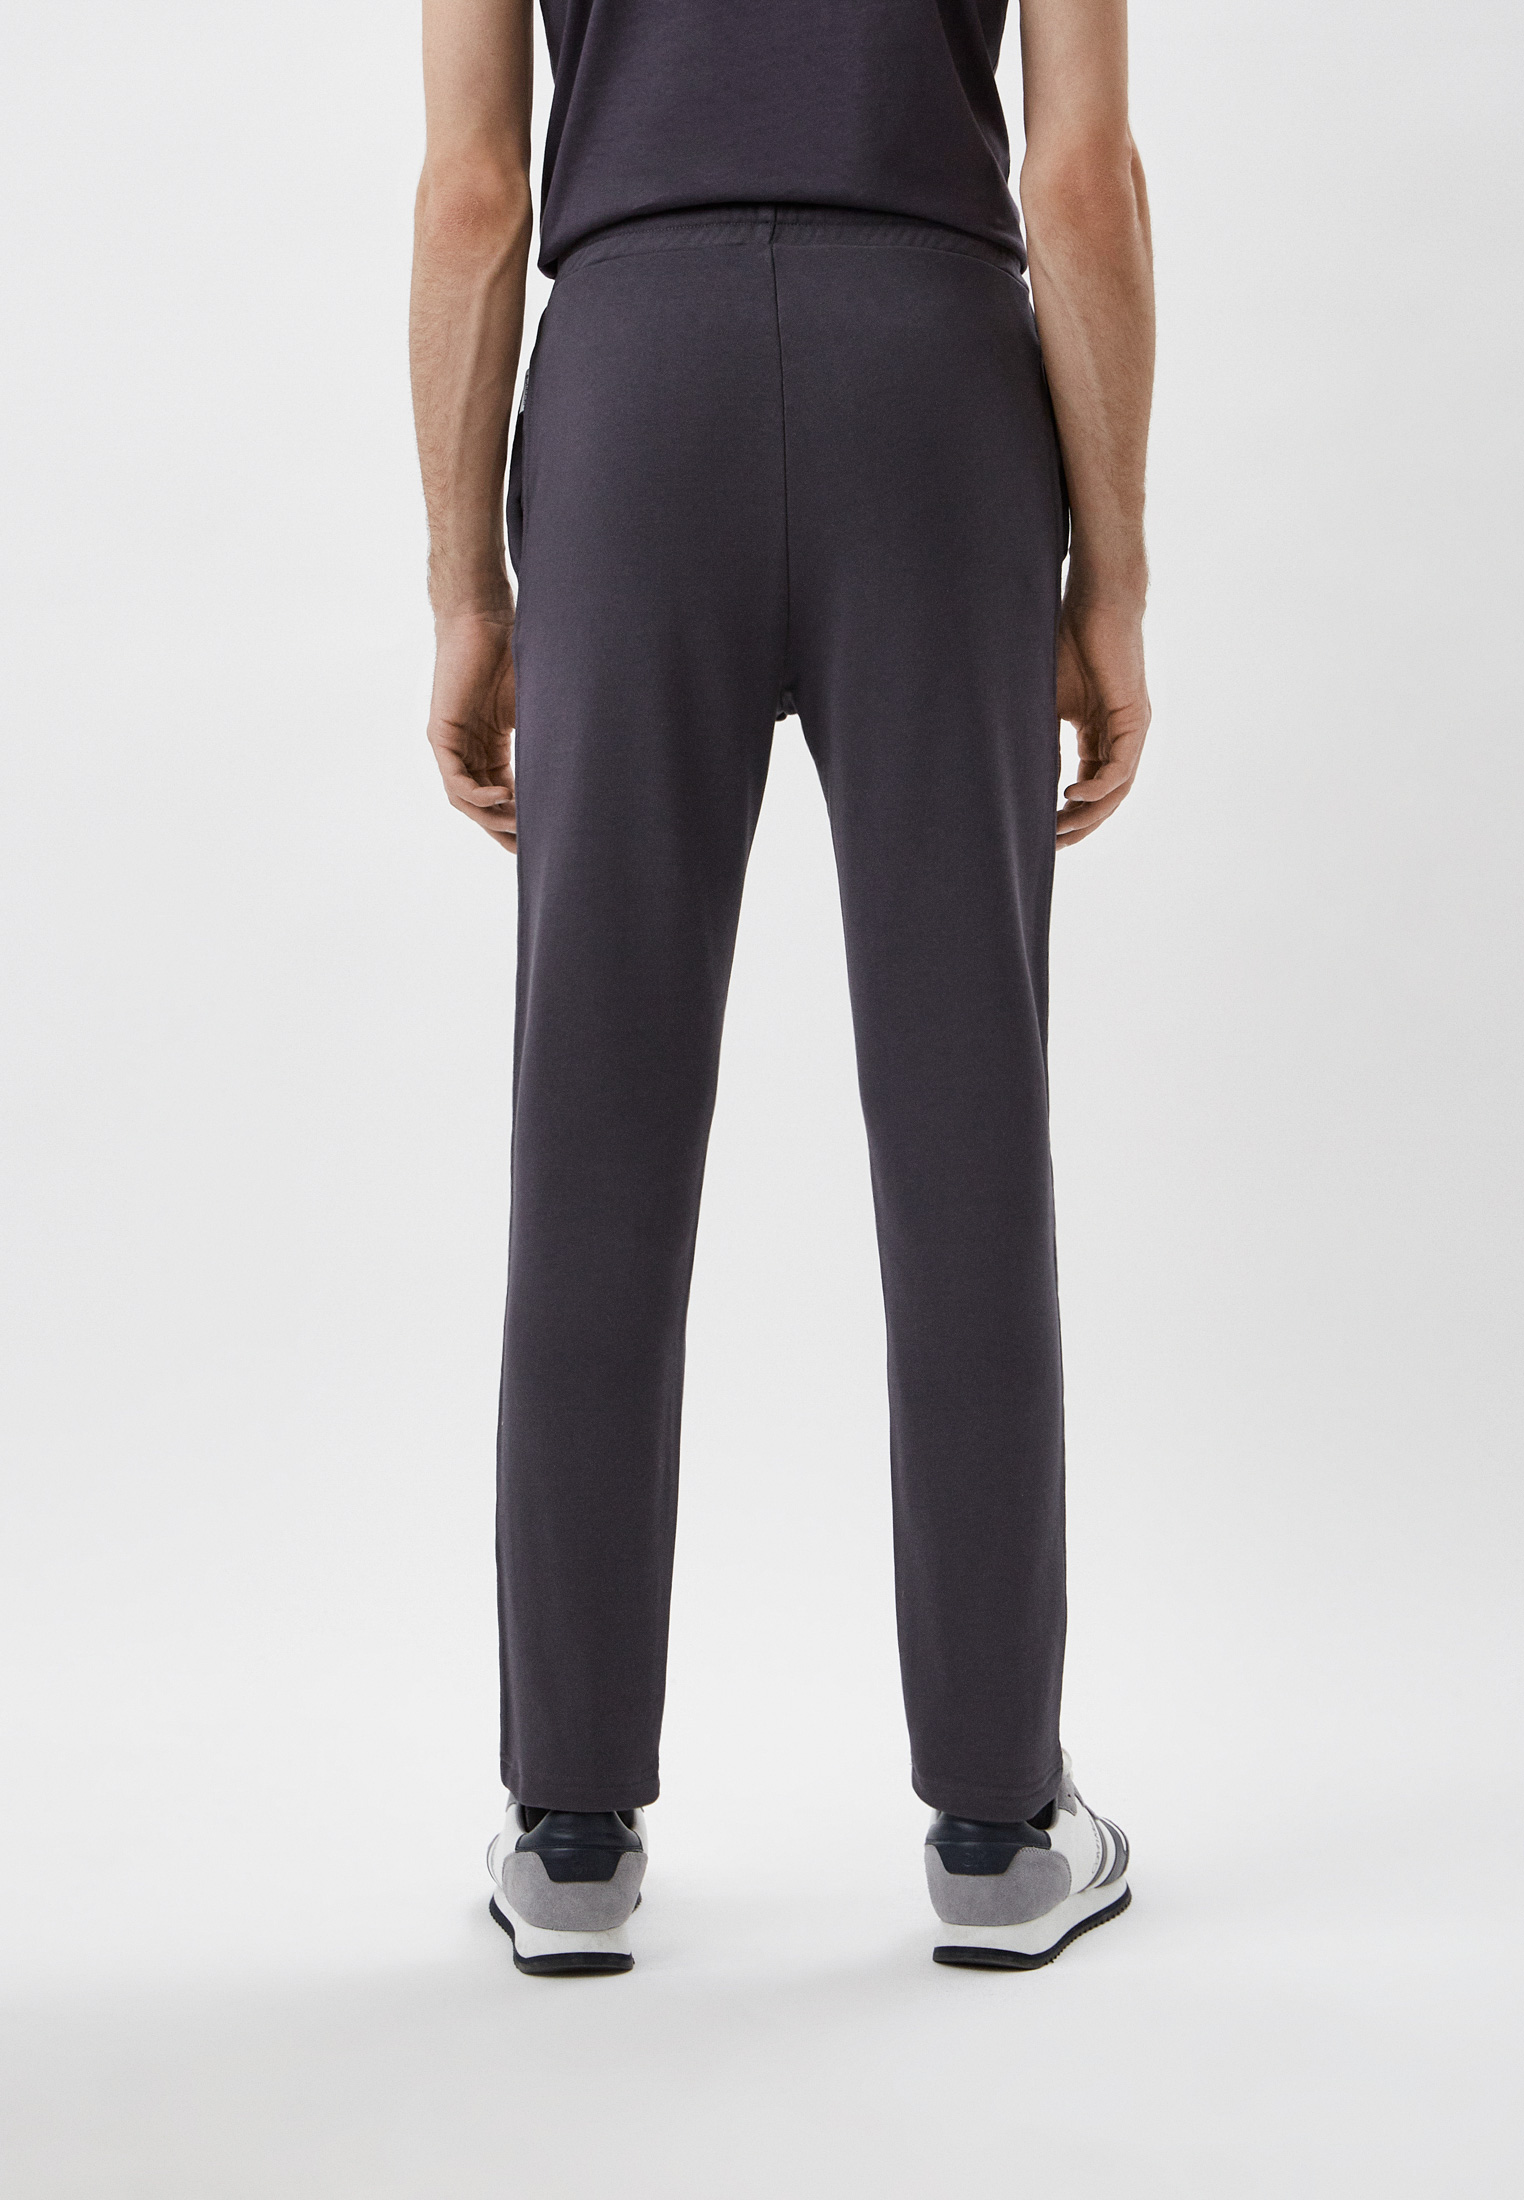 Мужские спортивные брюки Baldinini (Балдинини) M15: изображение 3